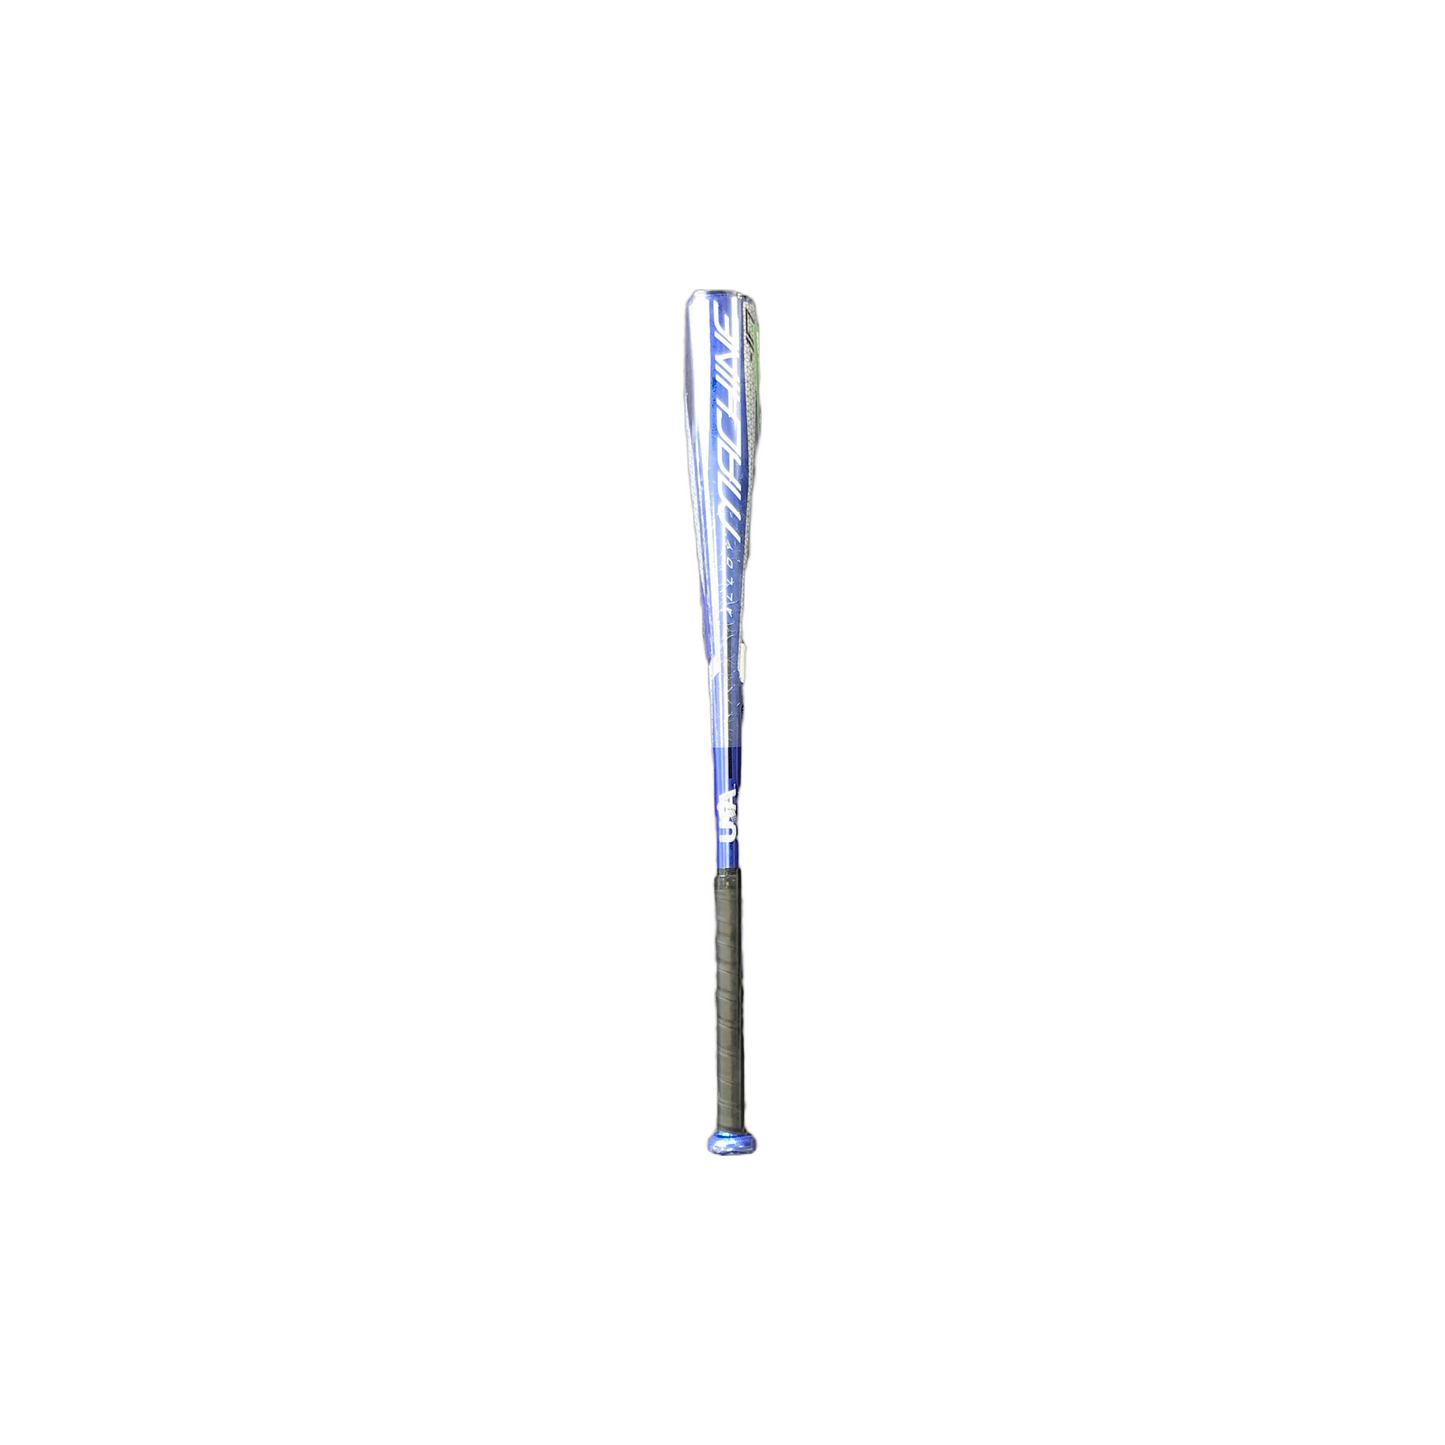 Rawlings MACHINE baseball bat.  Length 30” Diameter 2 ⅝” USMC10